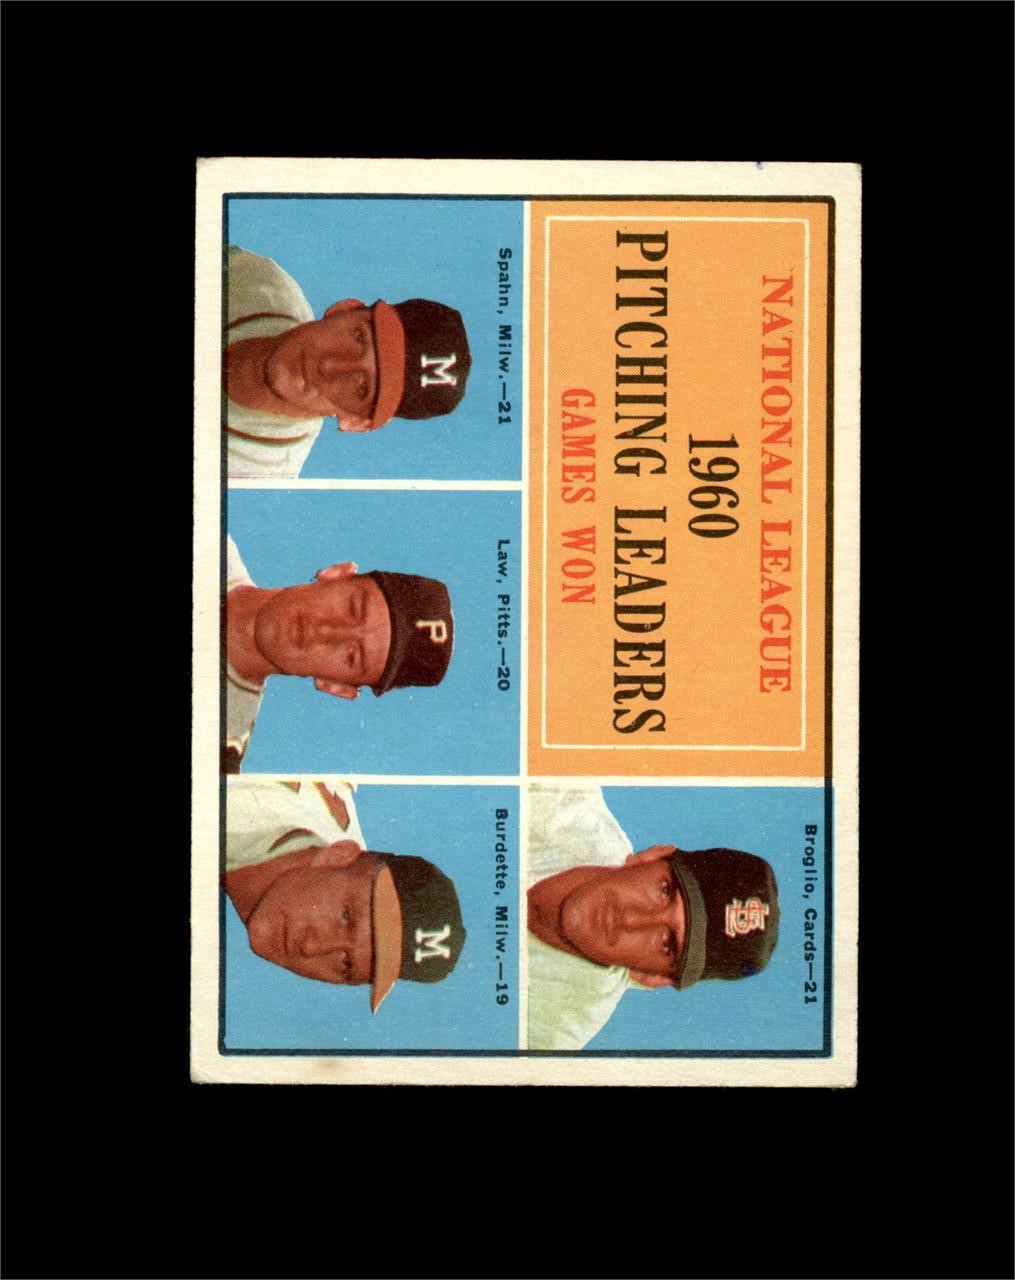 Vintage Sports Card Auction - Ends THUR 6/13 9PM CST